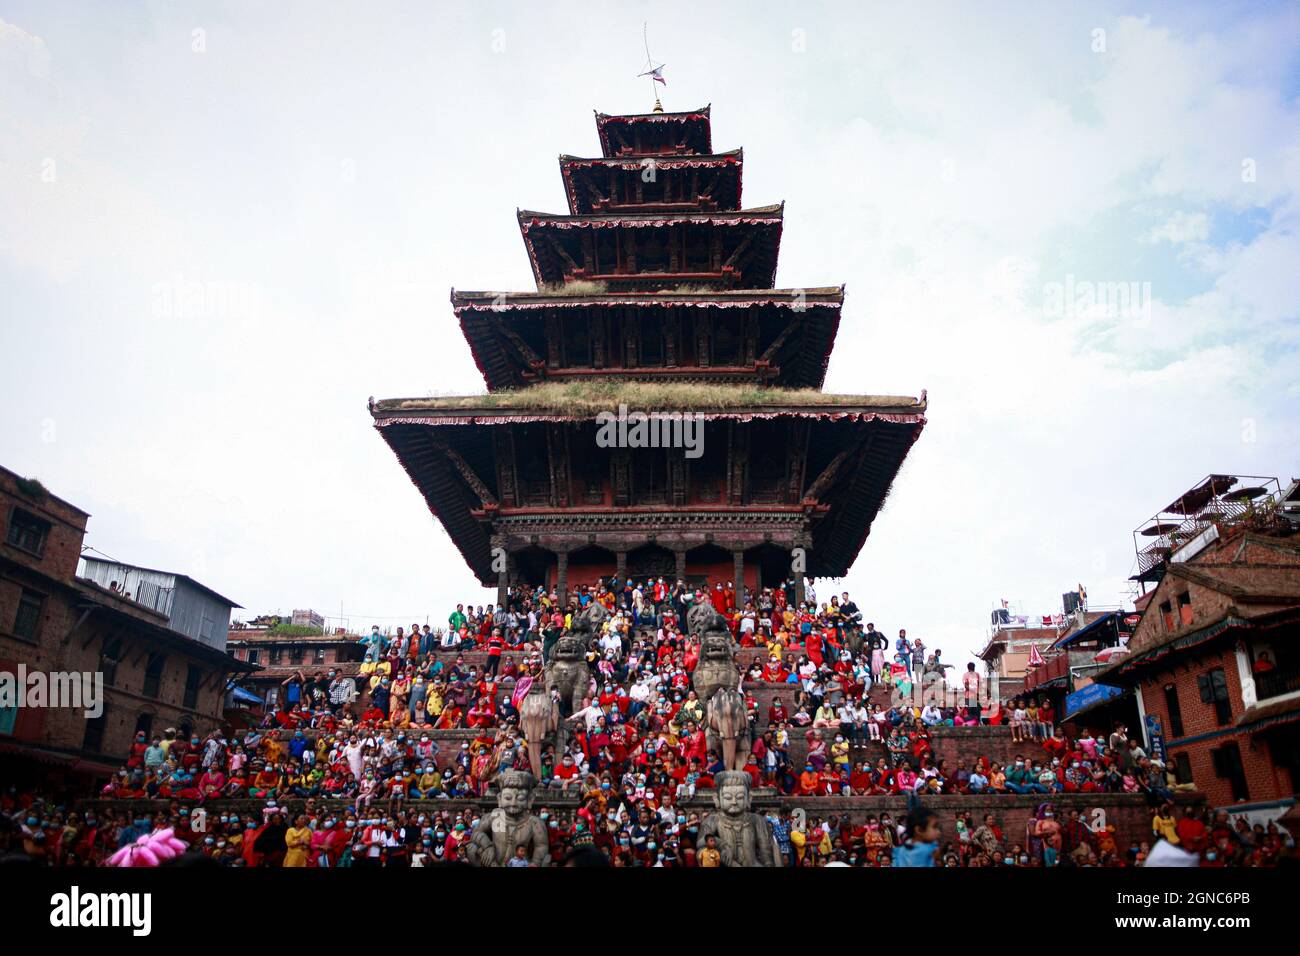 Bhaktapur, Bagmati, Nepal. September 2021. Die Treppe des Nyatapola-Tempels, des höchsten Tempels Nepals, ist voll von Zuschauern und Anhängern, die am 24. September 2021 an der Prozession von Indra Jatra in Bhaktapur in Nepal teilnehmen. Indra, der gott des Regens, wird bei diesem Fest in erster Linie von den Newar-Gemeinden nach Hinduismus und Buddhismus gefeiert. Neben dem Kathmandu-Tal feiern auch Kavre und der Dolakha-Distrikt des Landes dieses Fest mit Eifer. Quelle: Amit Machamasi/ZUMA Wire/Alamy Live News Stockfoto